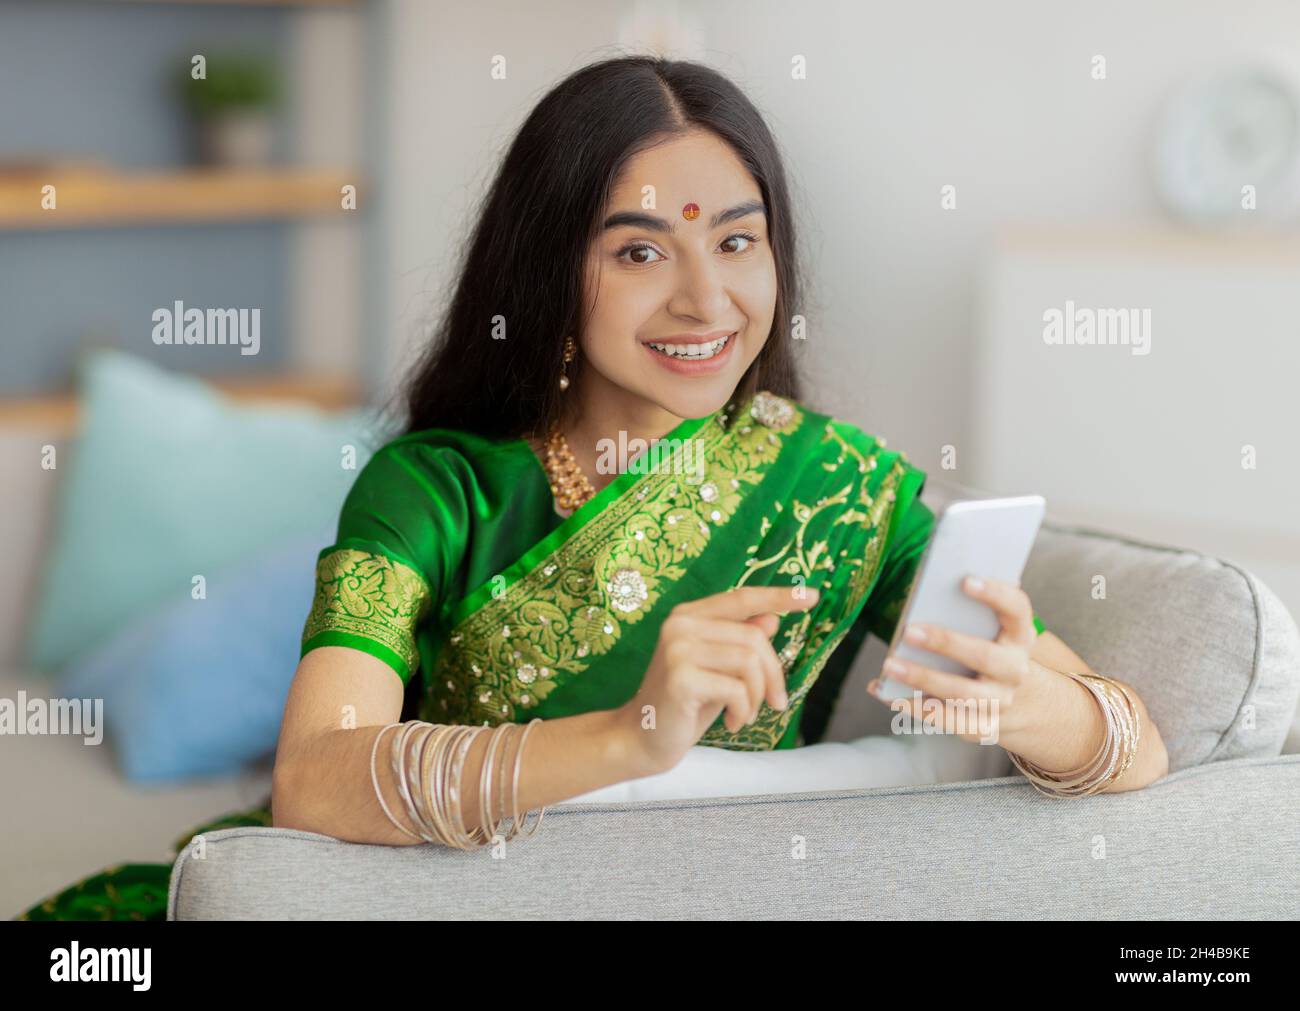 Charmante dame indienne dans une maison de saree traditionnelle assise sur un canapé avec téléphone portable, faisant appel vidéo à un ami de la maison.Femme orientale millénaire en cl ethnique Banque D'Images